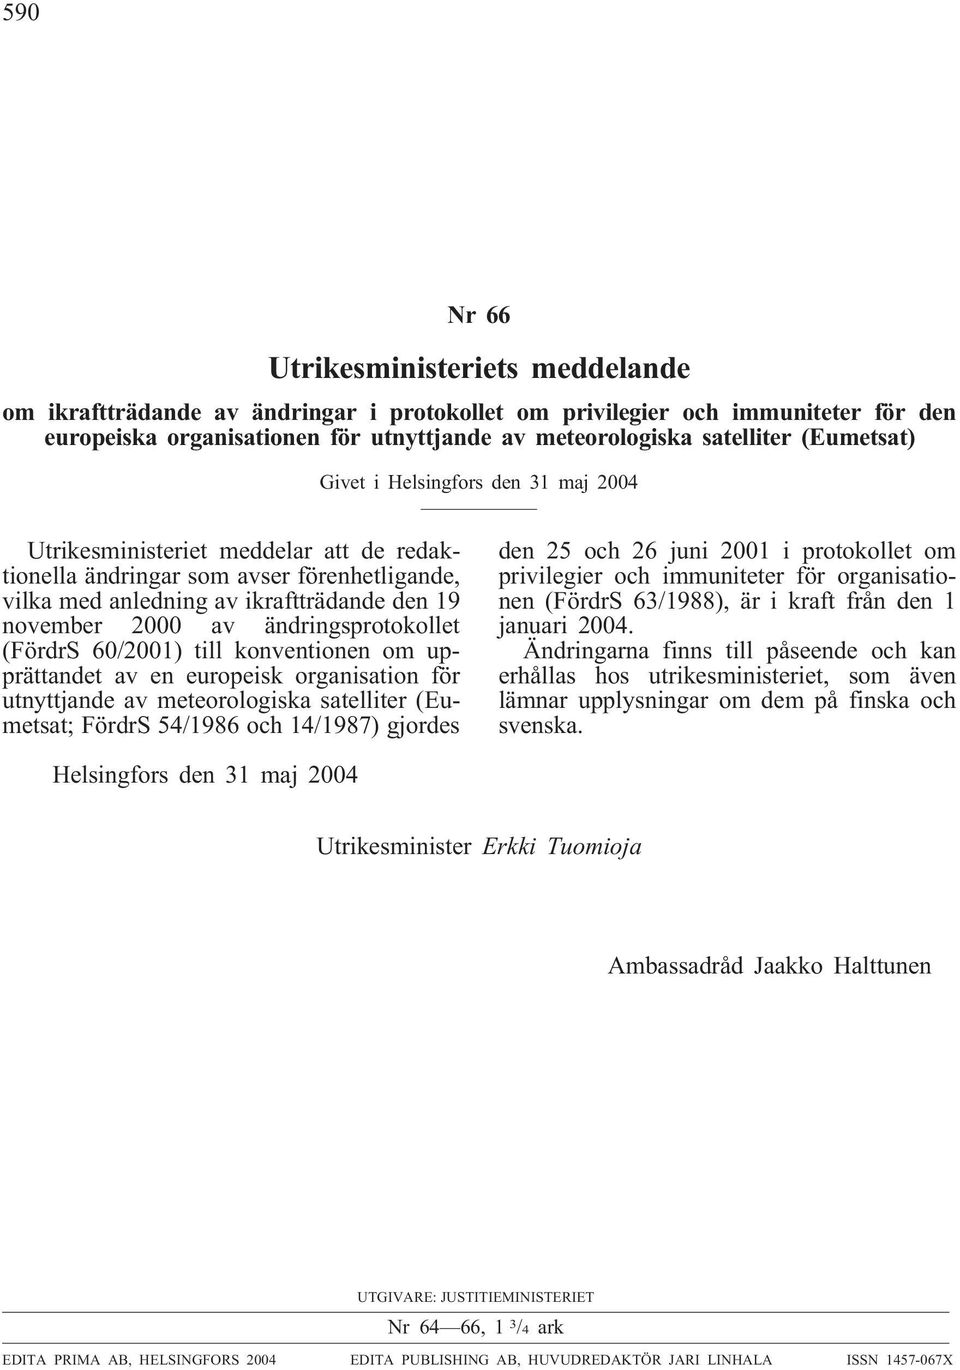 ändringsprotokollet (FördrS 60/2001) till konventionen om upprättandet av en europeisk organisation för utnyttjande av meteorologiska satelliter (Eumetsat; FördrS 54/1986 och 14/1987) gjordes den 25